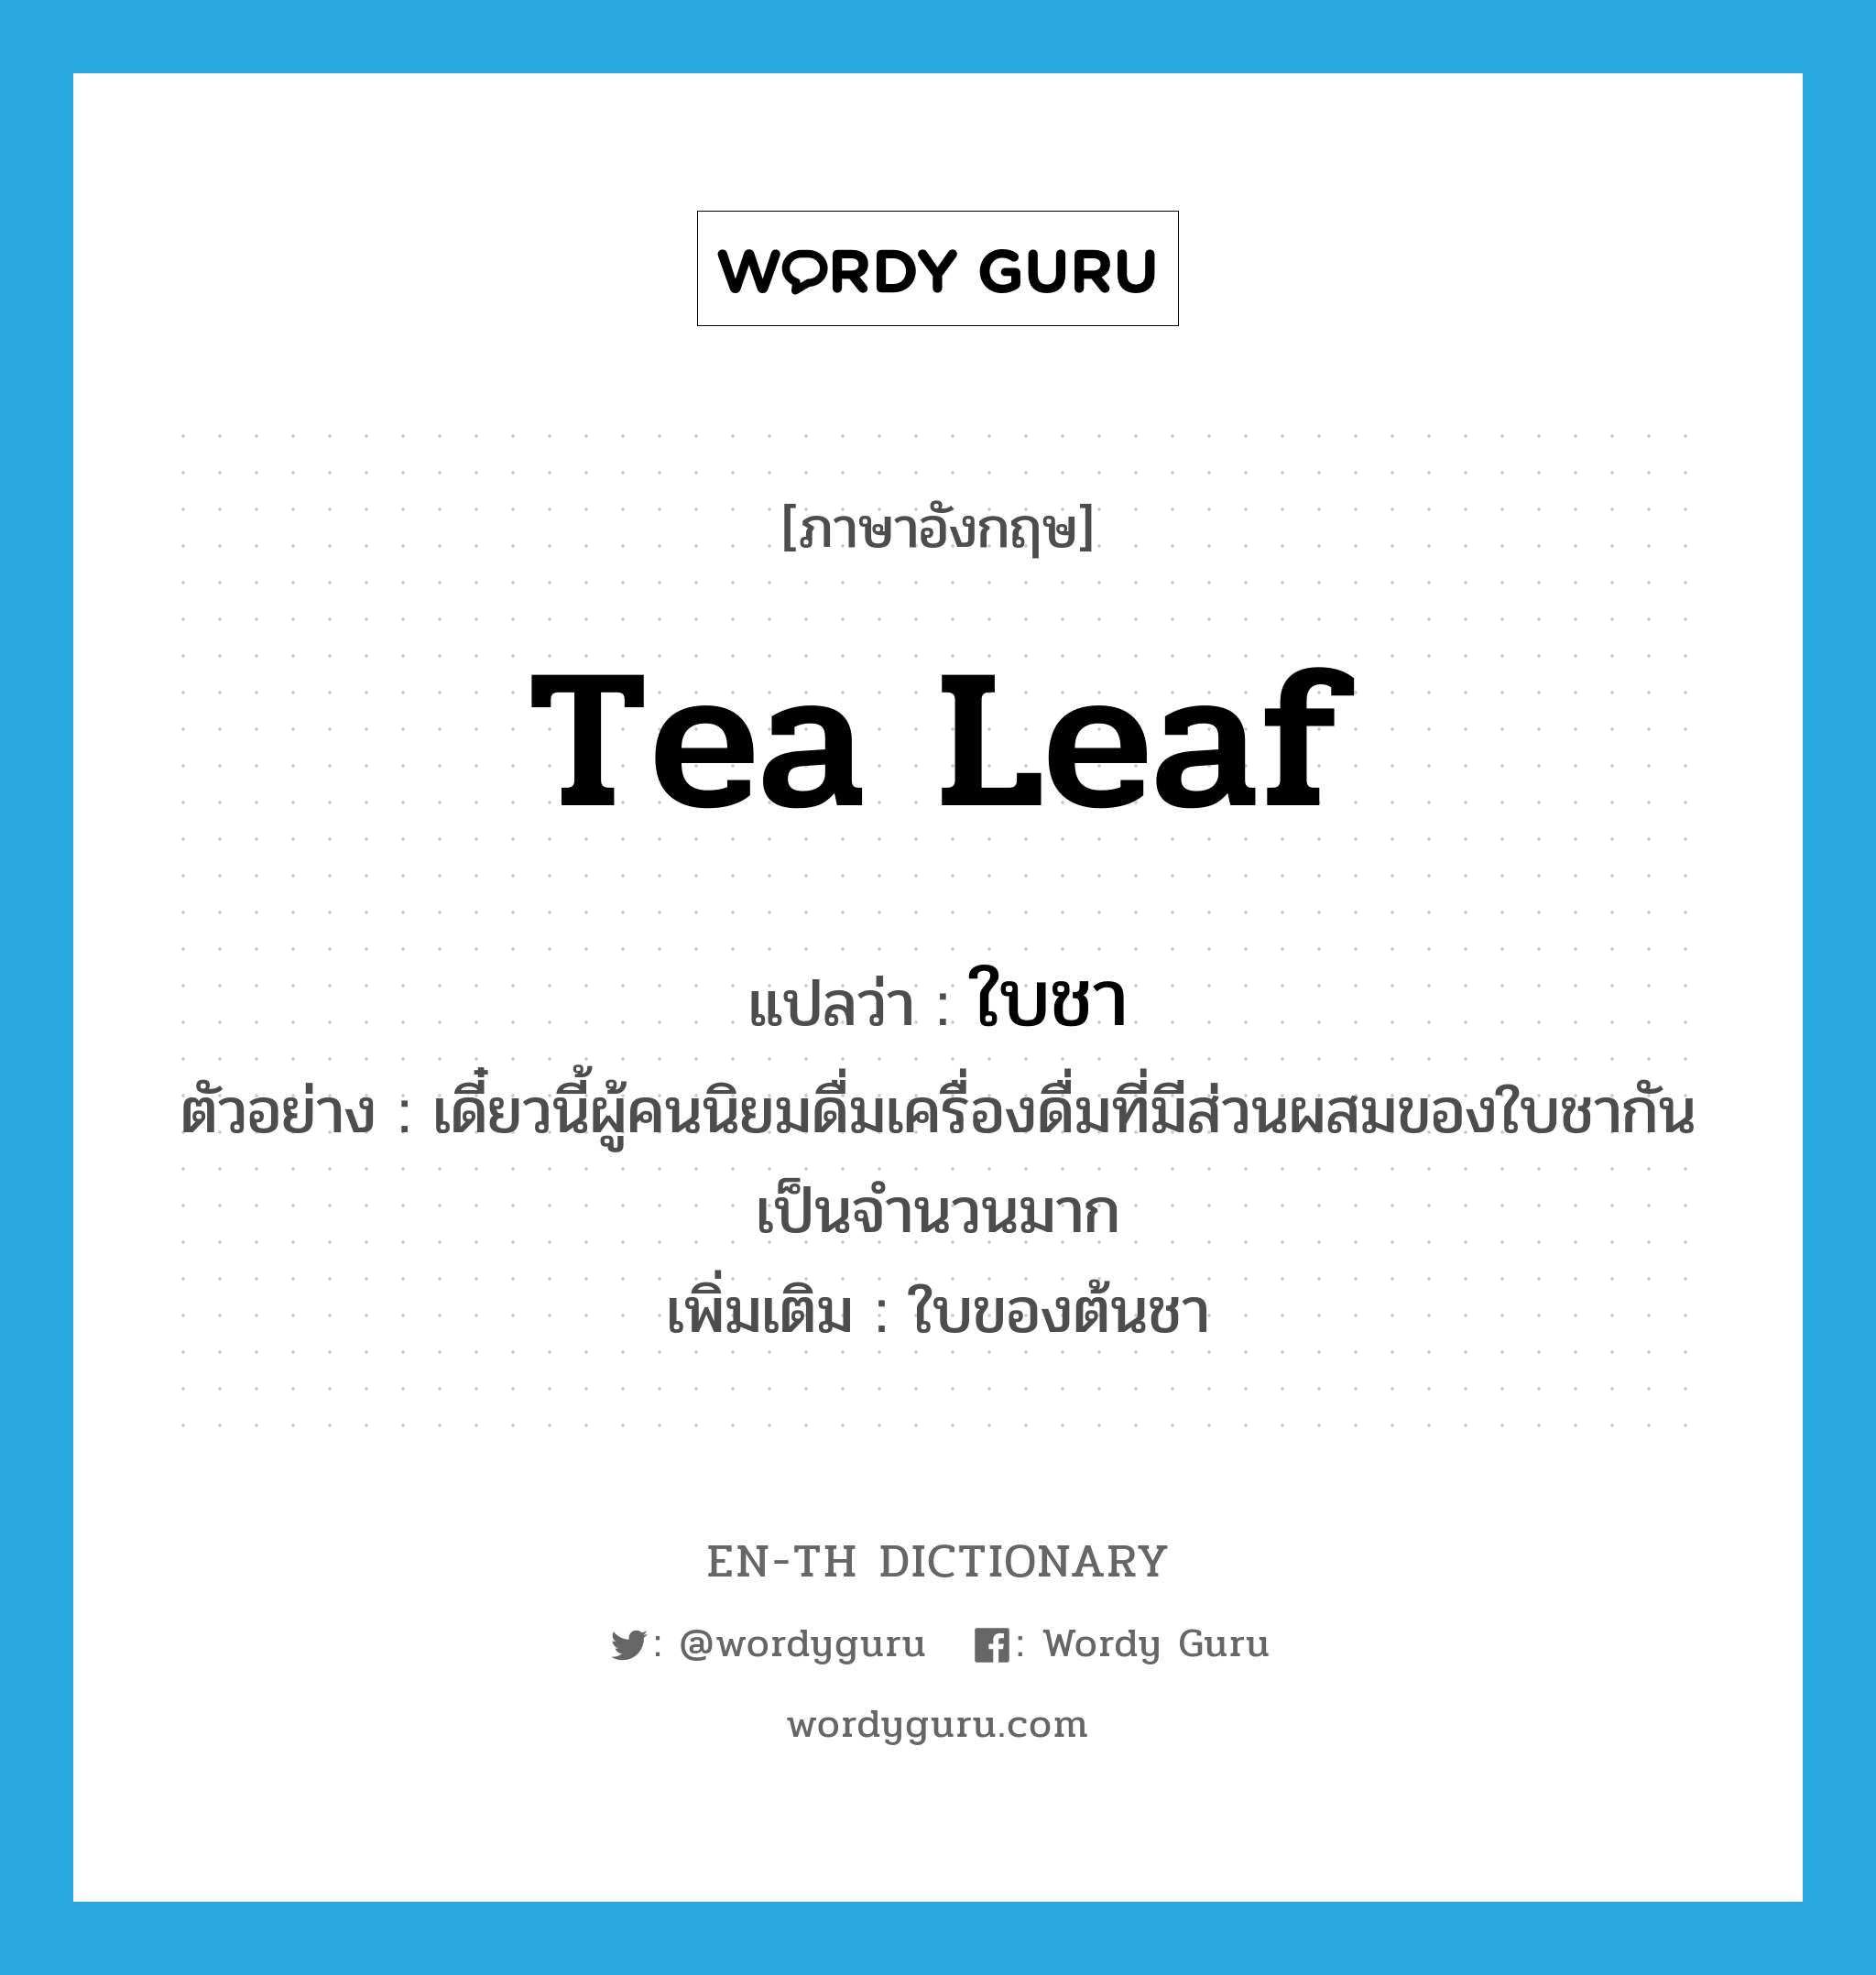 ใบชา ภาษาอังกฤษ?, คำศัพท์ภาษาอังกฤษ ใบชา แปลว่า tea leaf ประเภท N ตัวอย่าง เดี๋ยวนี้ผู้คนนิยมดื่มเครื่องดื่มที่มีส่วนผสมของใบชากันเป็นจำนวนมาก เพิ่มเติม ใบของต้นชา หมวด N